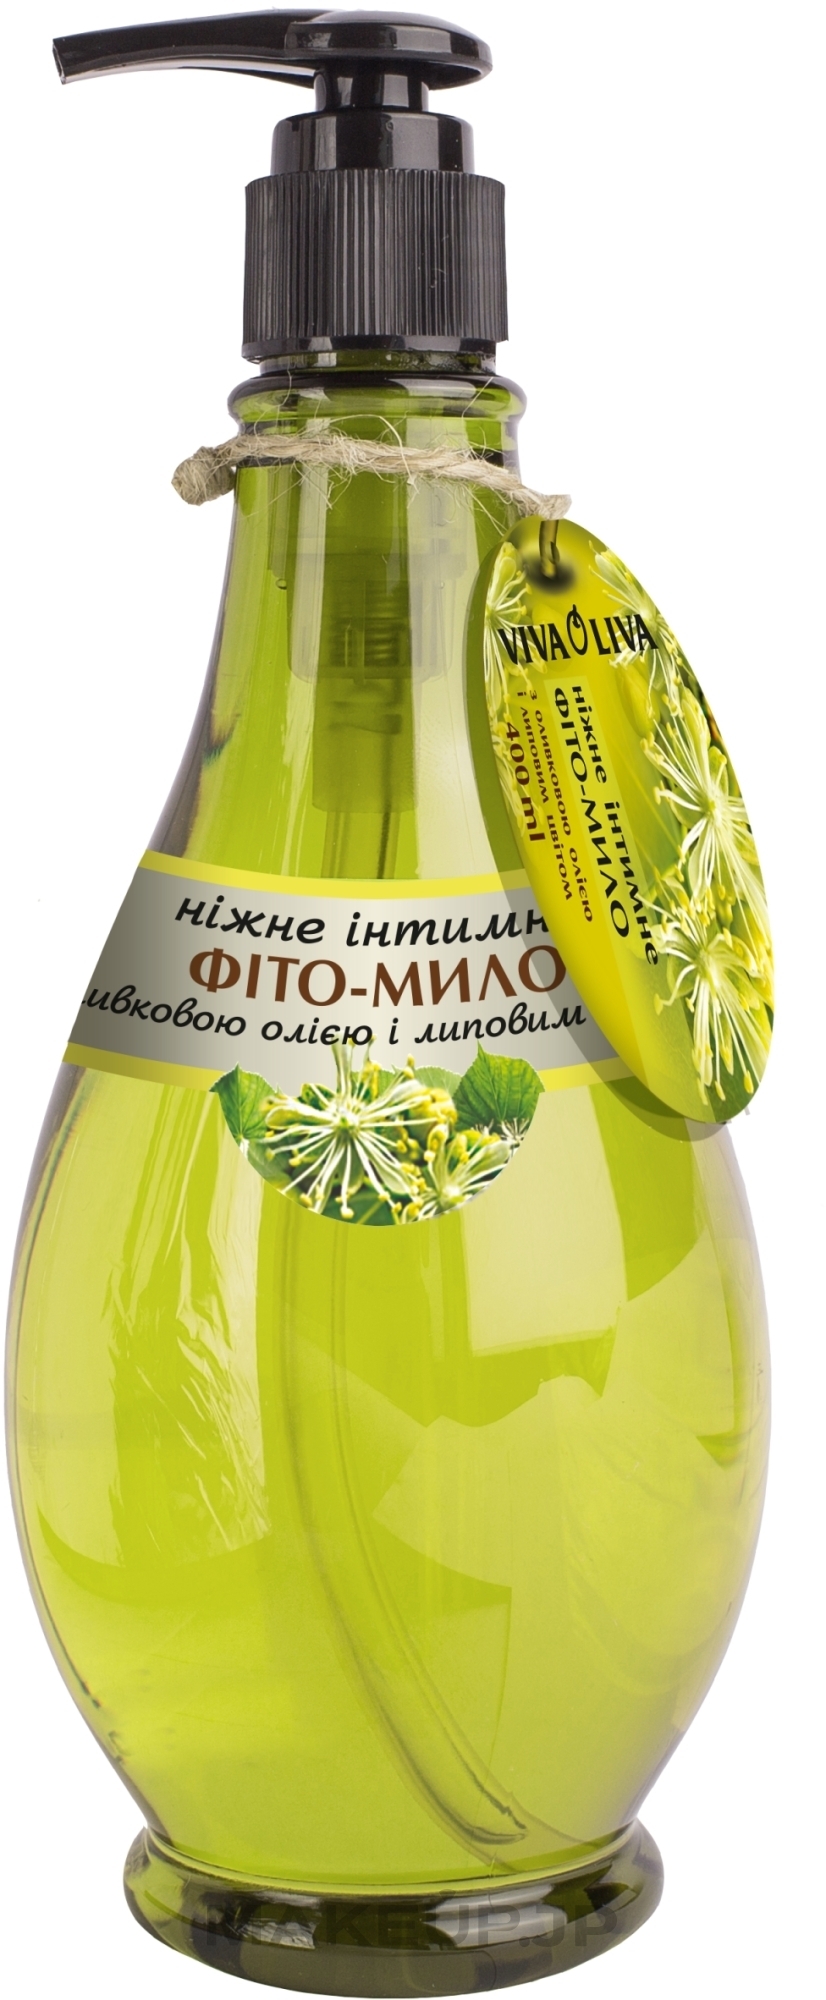 Gentle Olive Oil & Linden Blossom Intimate Phyto-Soap - Vkusnyye Sekrety Viva Oliva — photo 400 ml